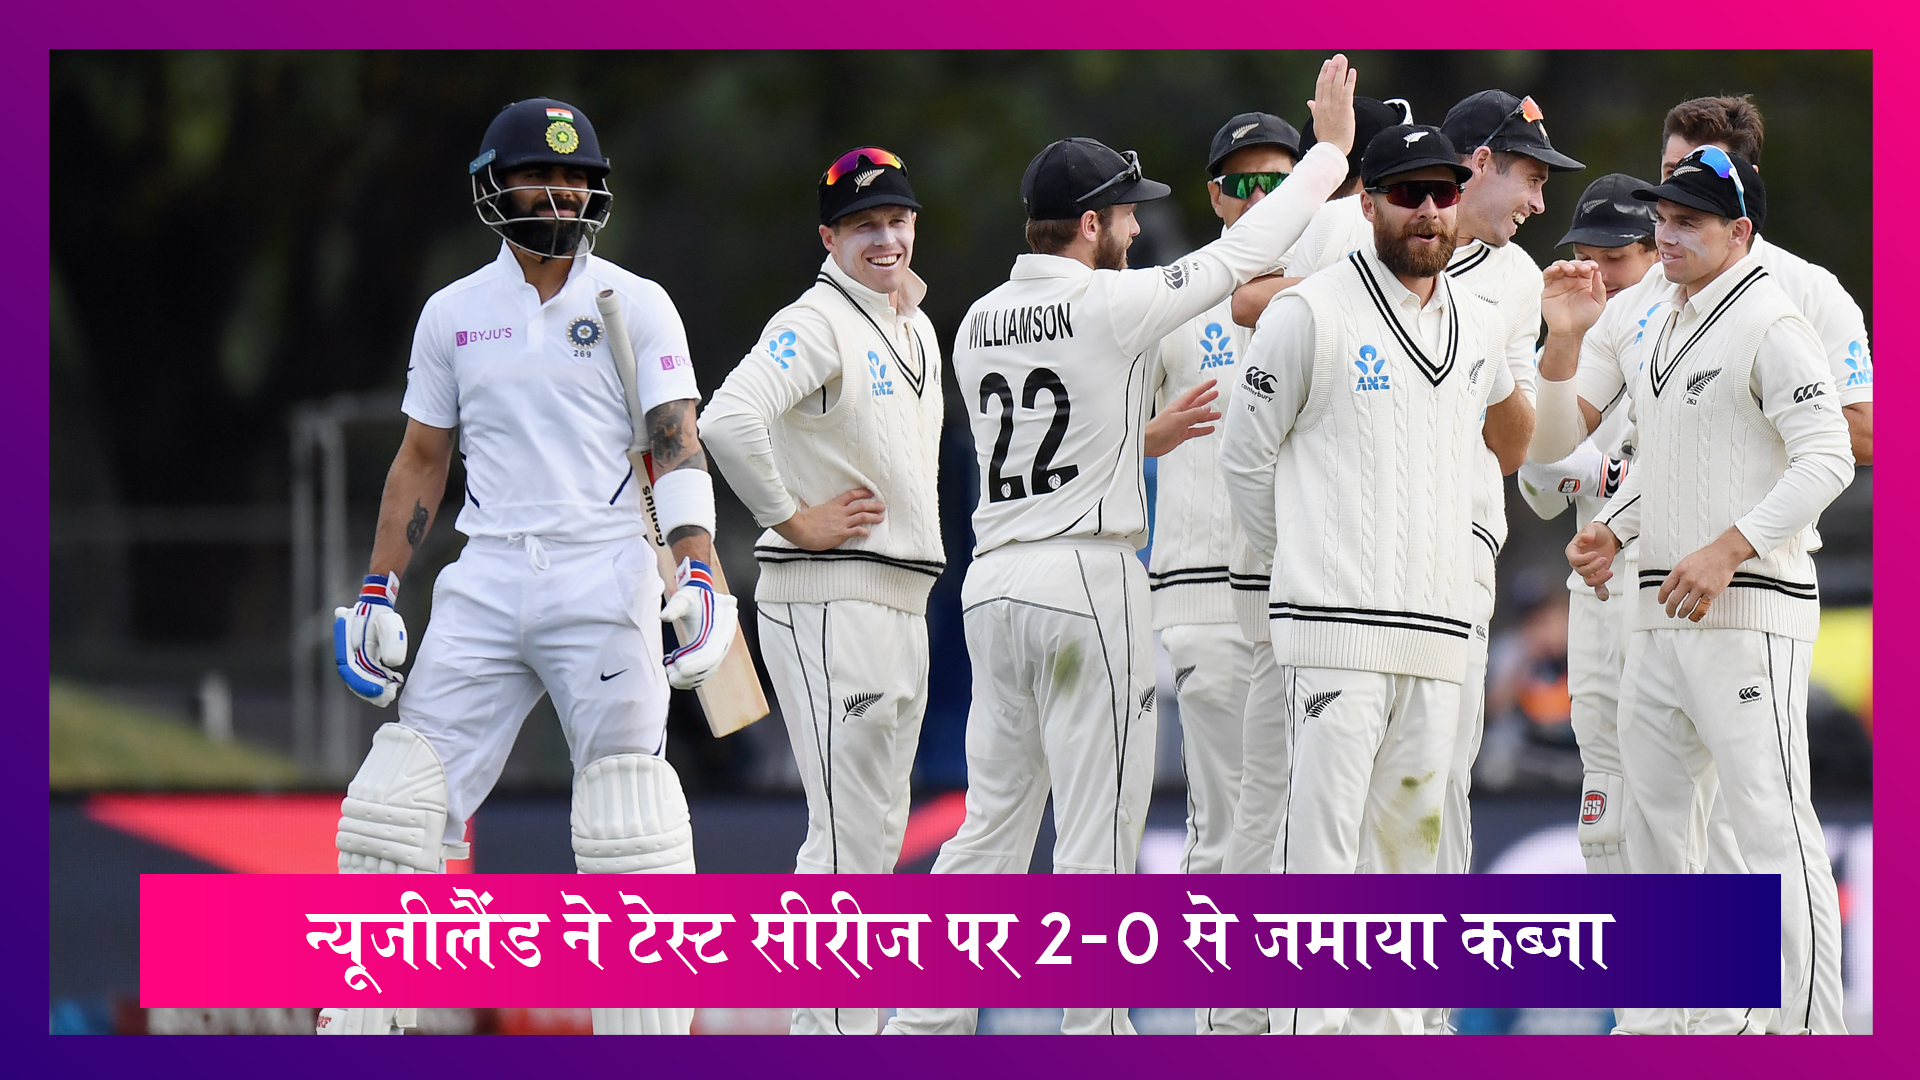 IND vs NZ 2nd Test Match 2020 Day 3: क्राइस्टचर्च में न्यूजीलैंड ने भारत को 7 विकेट से दी शिकस्त